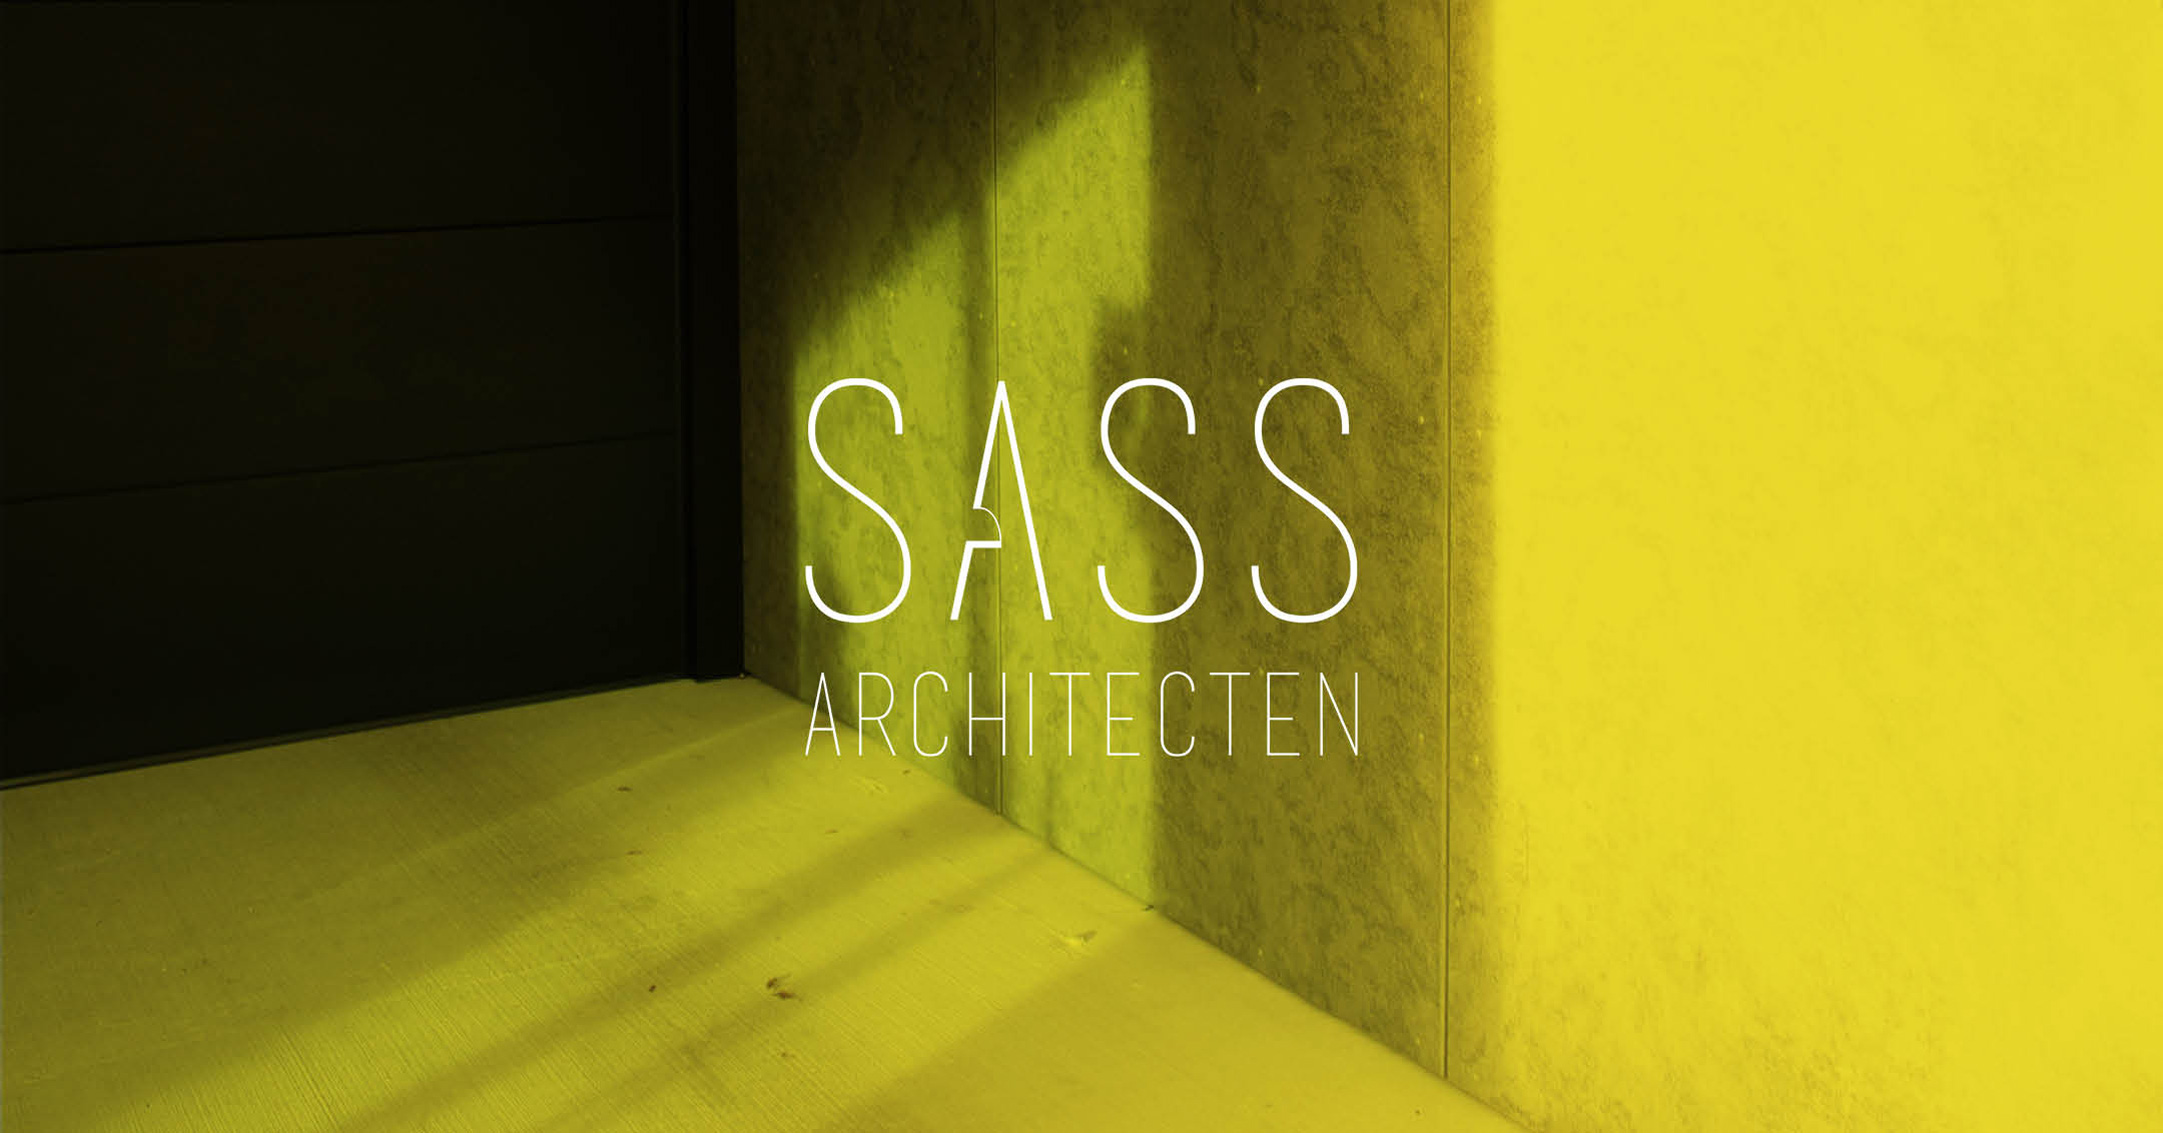 Sass Architecten